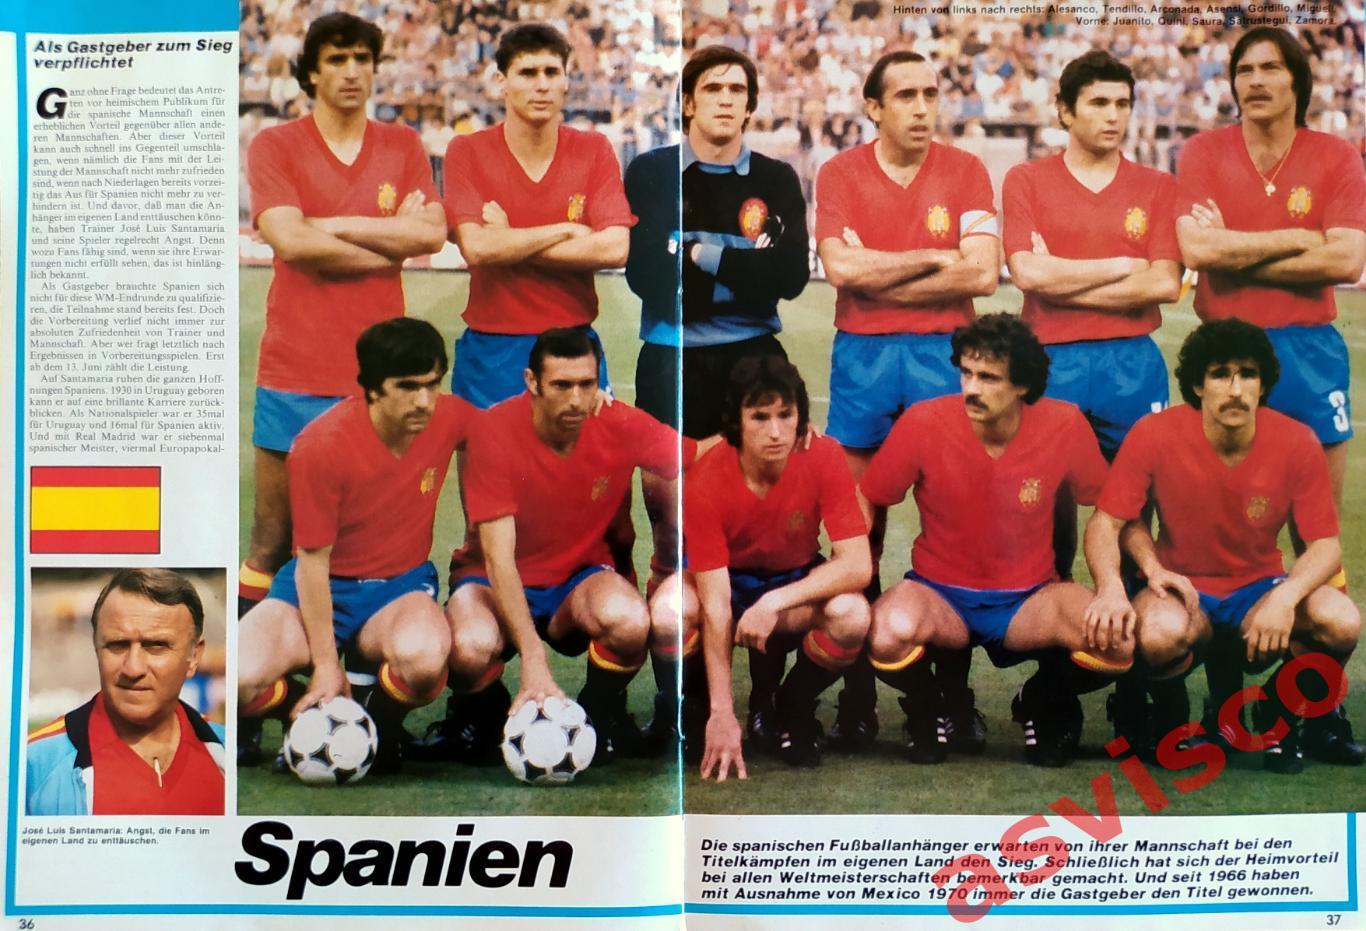 Чемпионат Мира по футболу в Испании 1982 года. Представление команд. Автографы. 5